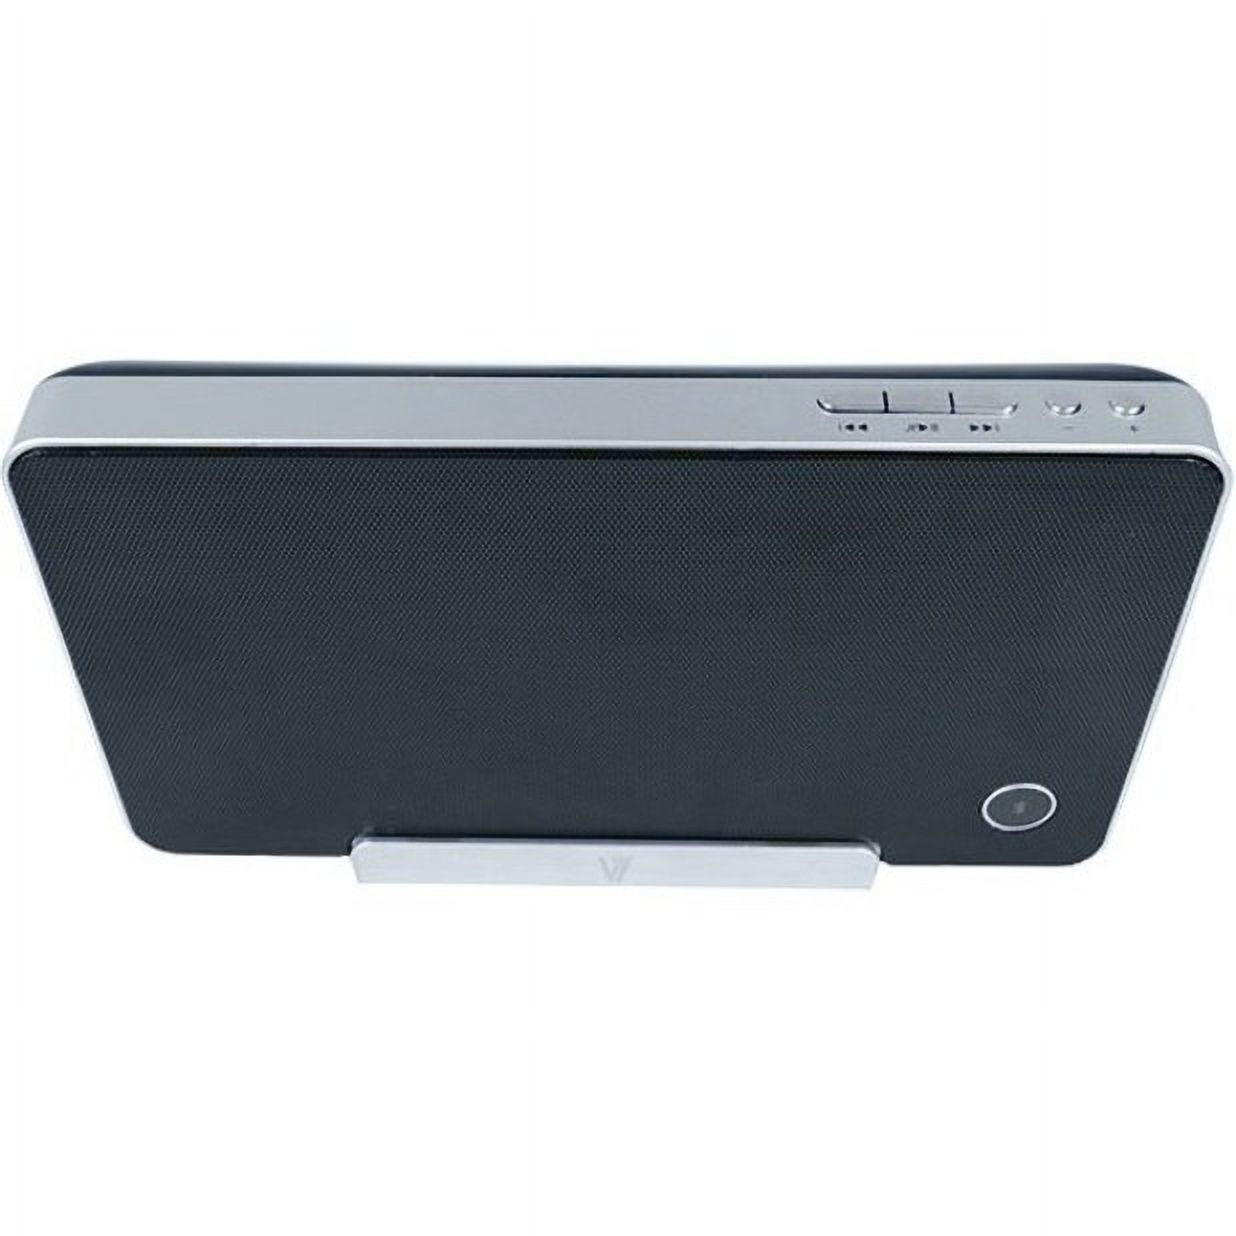 V7 Portable Bluetooth Speaker, Black, SP5500 - image 4 of 11